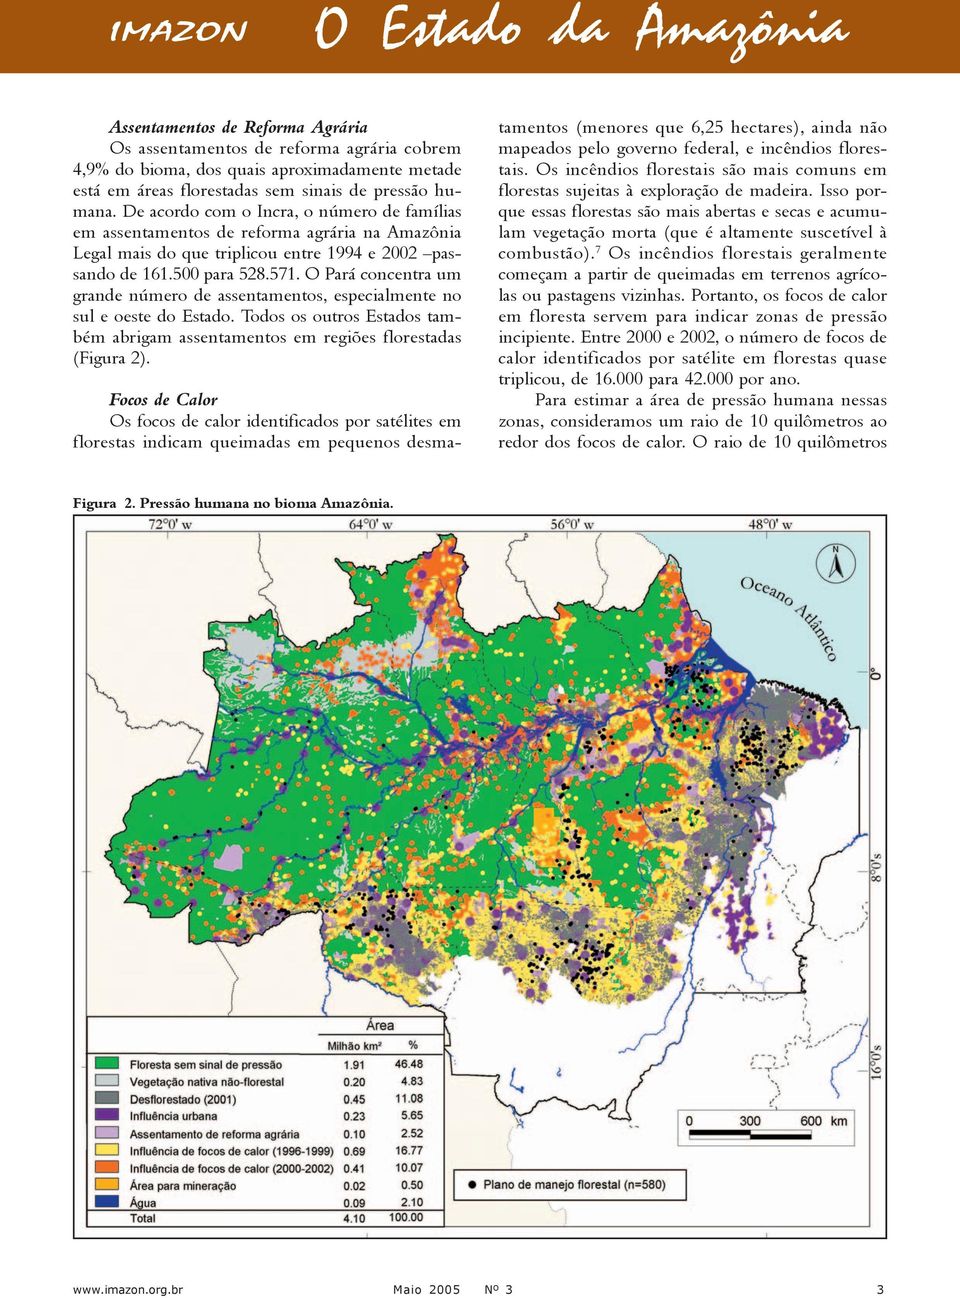 O Pará concentra um grande número de assentamentos, especialmente no sul e oeste do Estado. Todos os outros Estados também abrigam assentamentos em regiões florestadas (Figura 2).